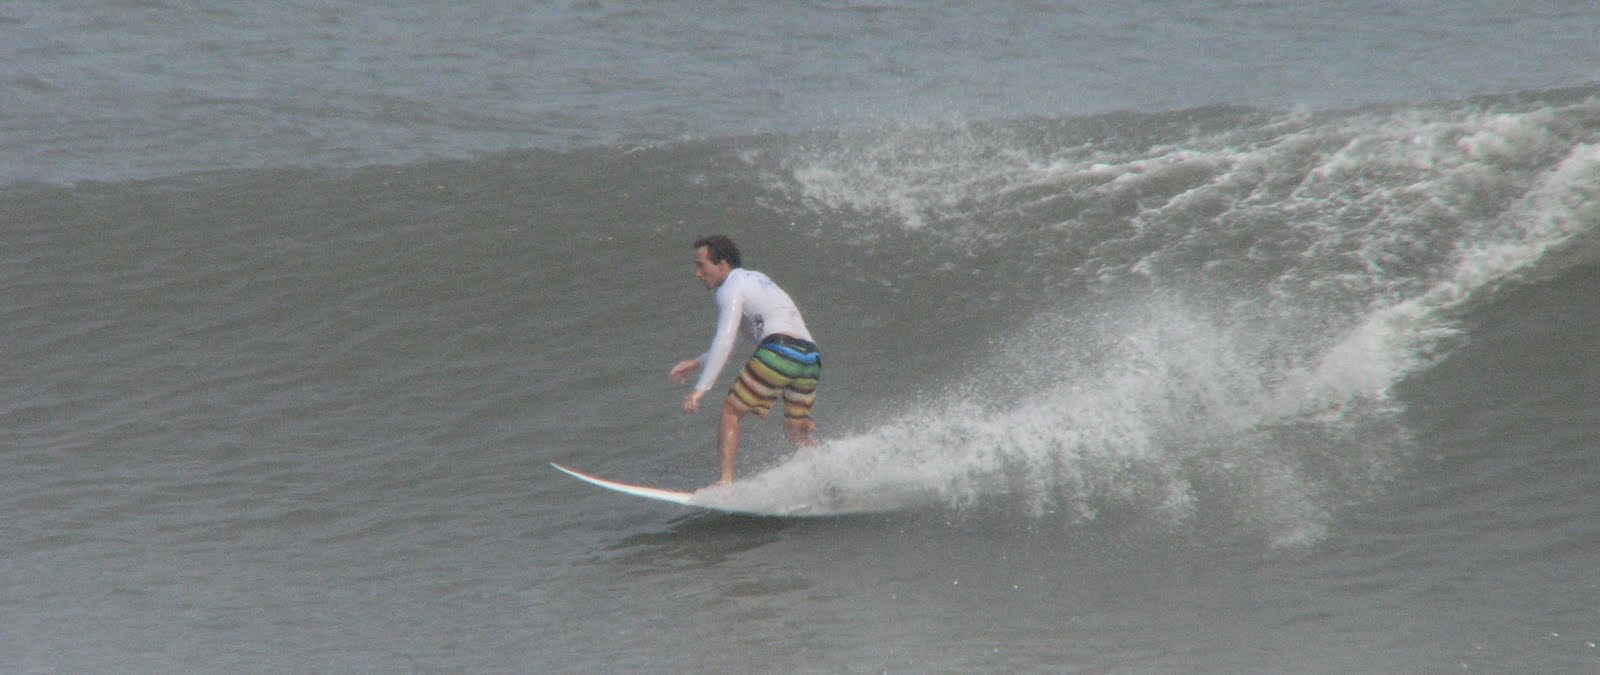 Wooden Jetty Surfing – Long Beach Island, NJ